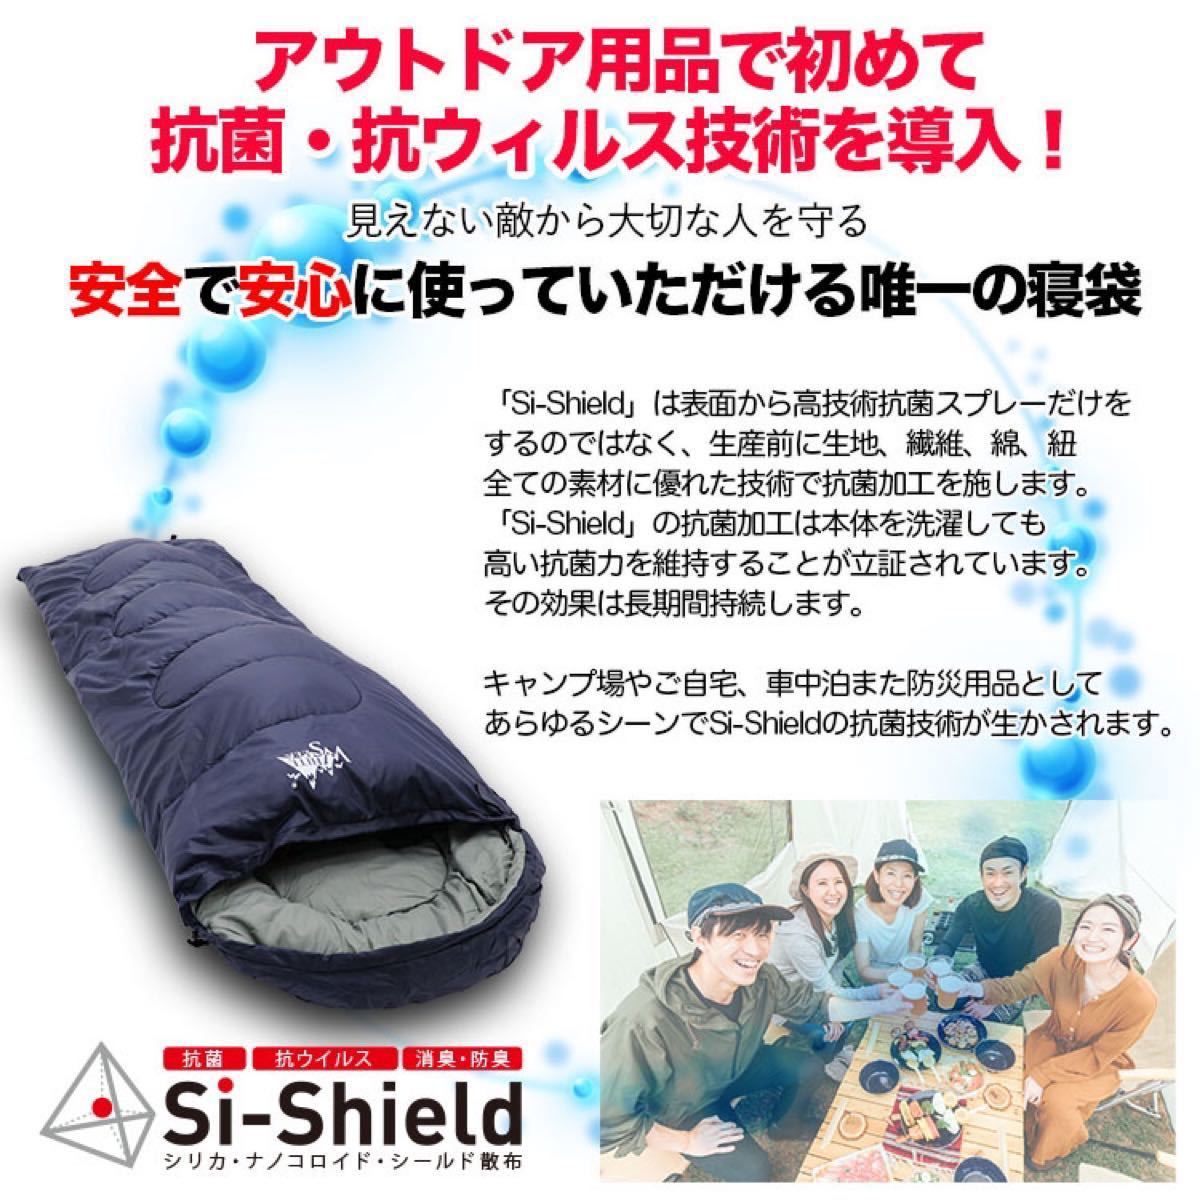 抗菌 抗ウィルス 消臭 防臭 寝袋 シュラフ 封筒型 快適 1500 アウトドア 防災 Si-Shield WhiteSeek